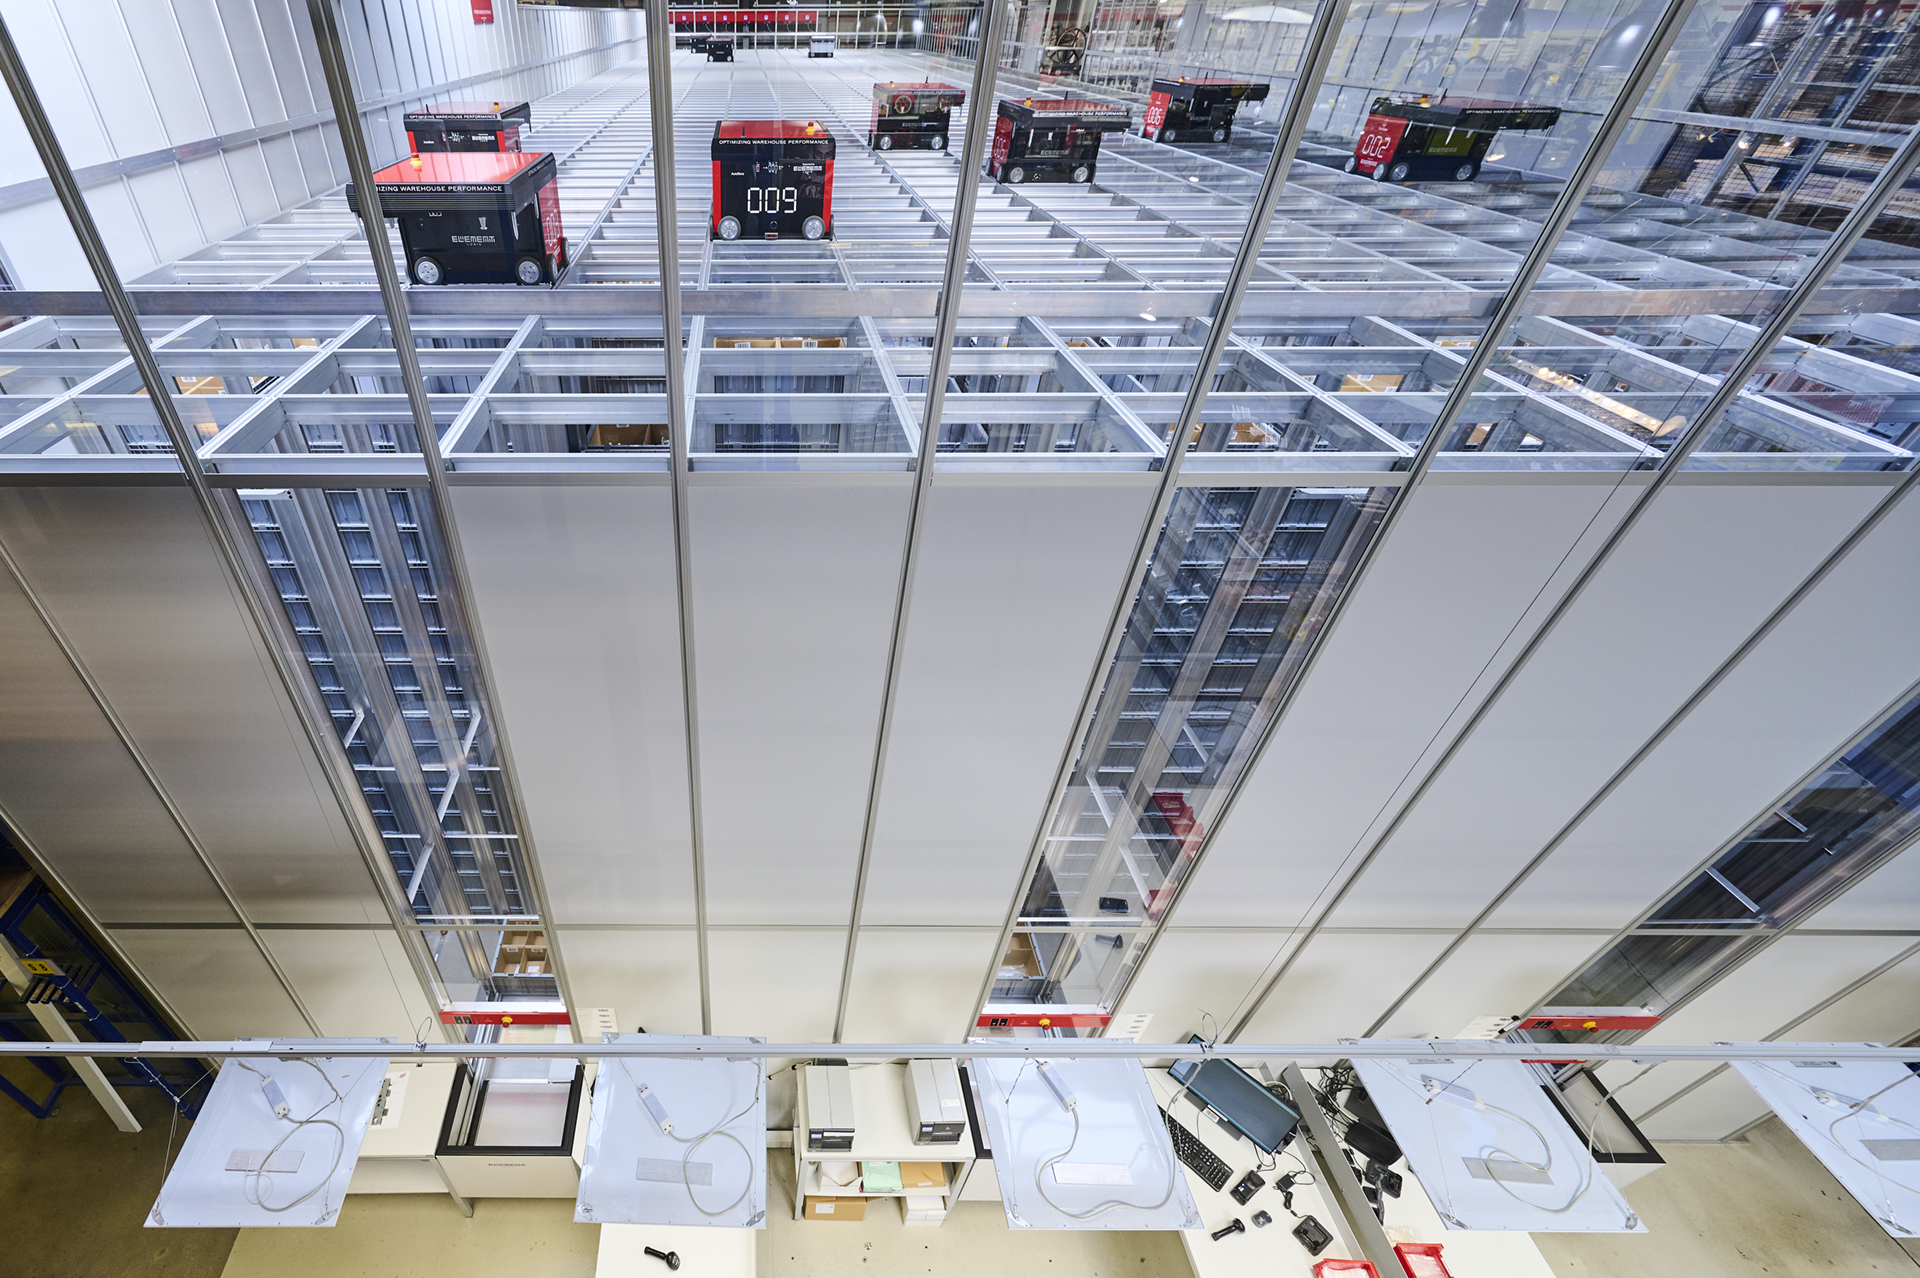 Vista de ángulo elevado de un sistema de almacenamiento automatizado de AutoStore, mostrando robots rojos desplazándose sobre una rejilla metálica con estaciones de trabajo debajo.